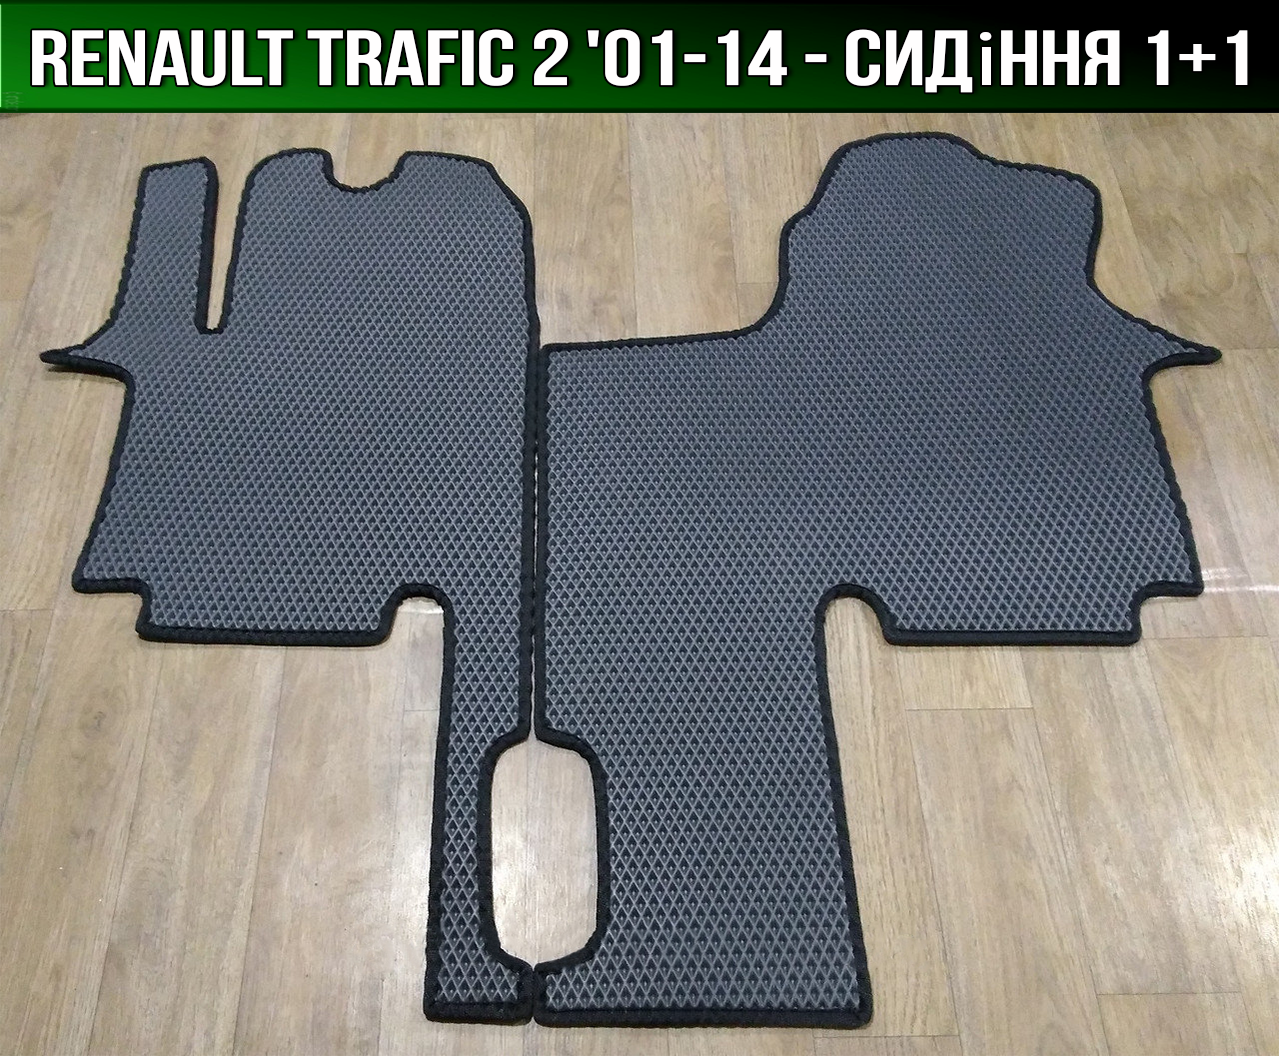 ЄВА килимки Renault Trafic 2 '01-14. EVA килими Рено Трафік 2